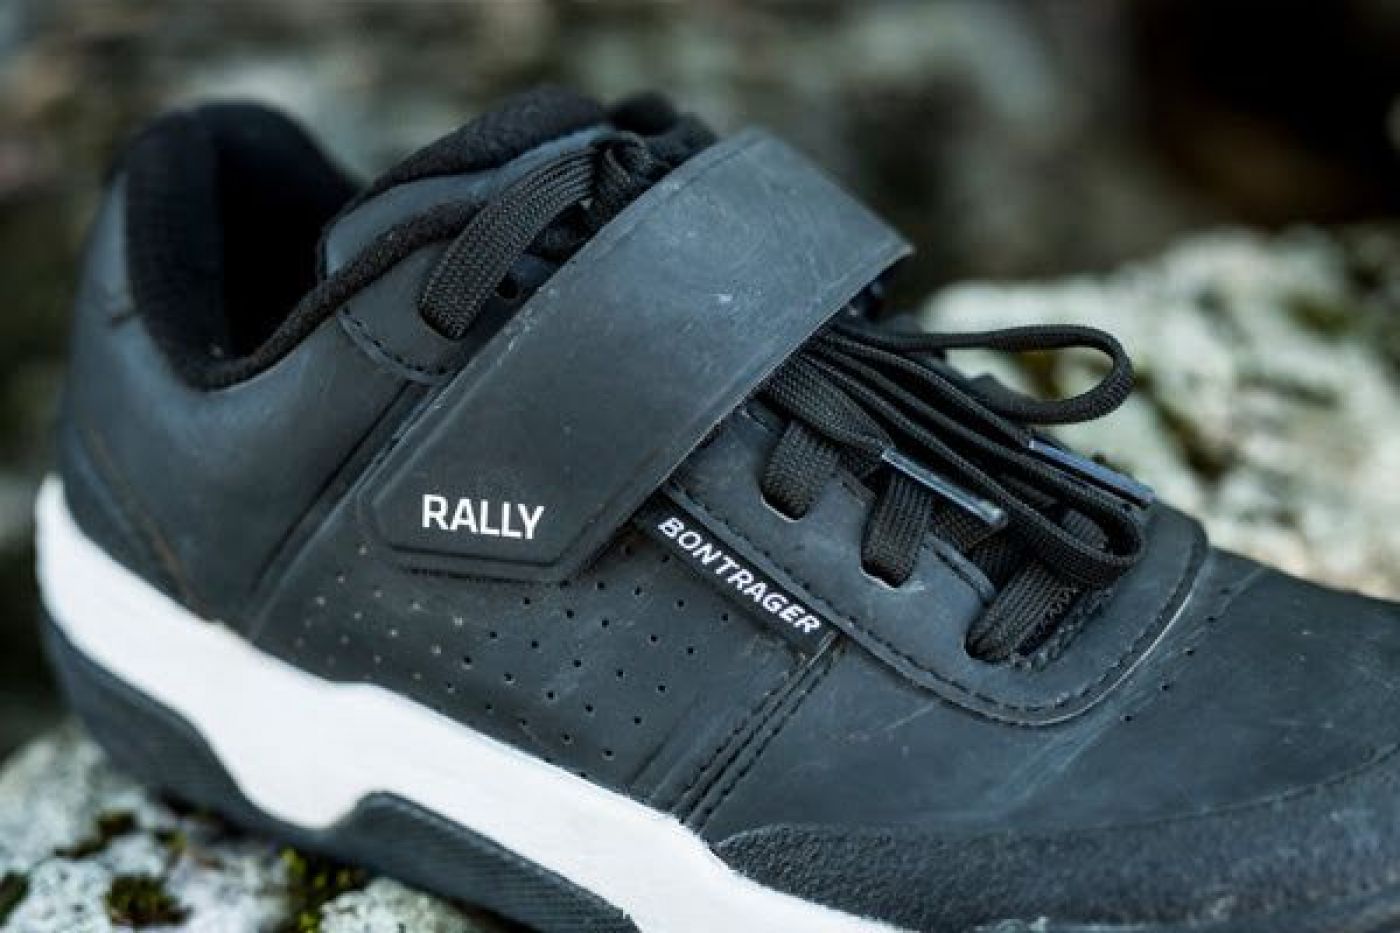 Novos sapatos Rally da Bontrager para montanha, para plataforma e pedais de encaixe